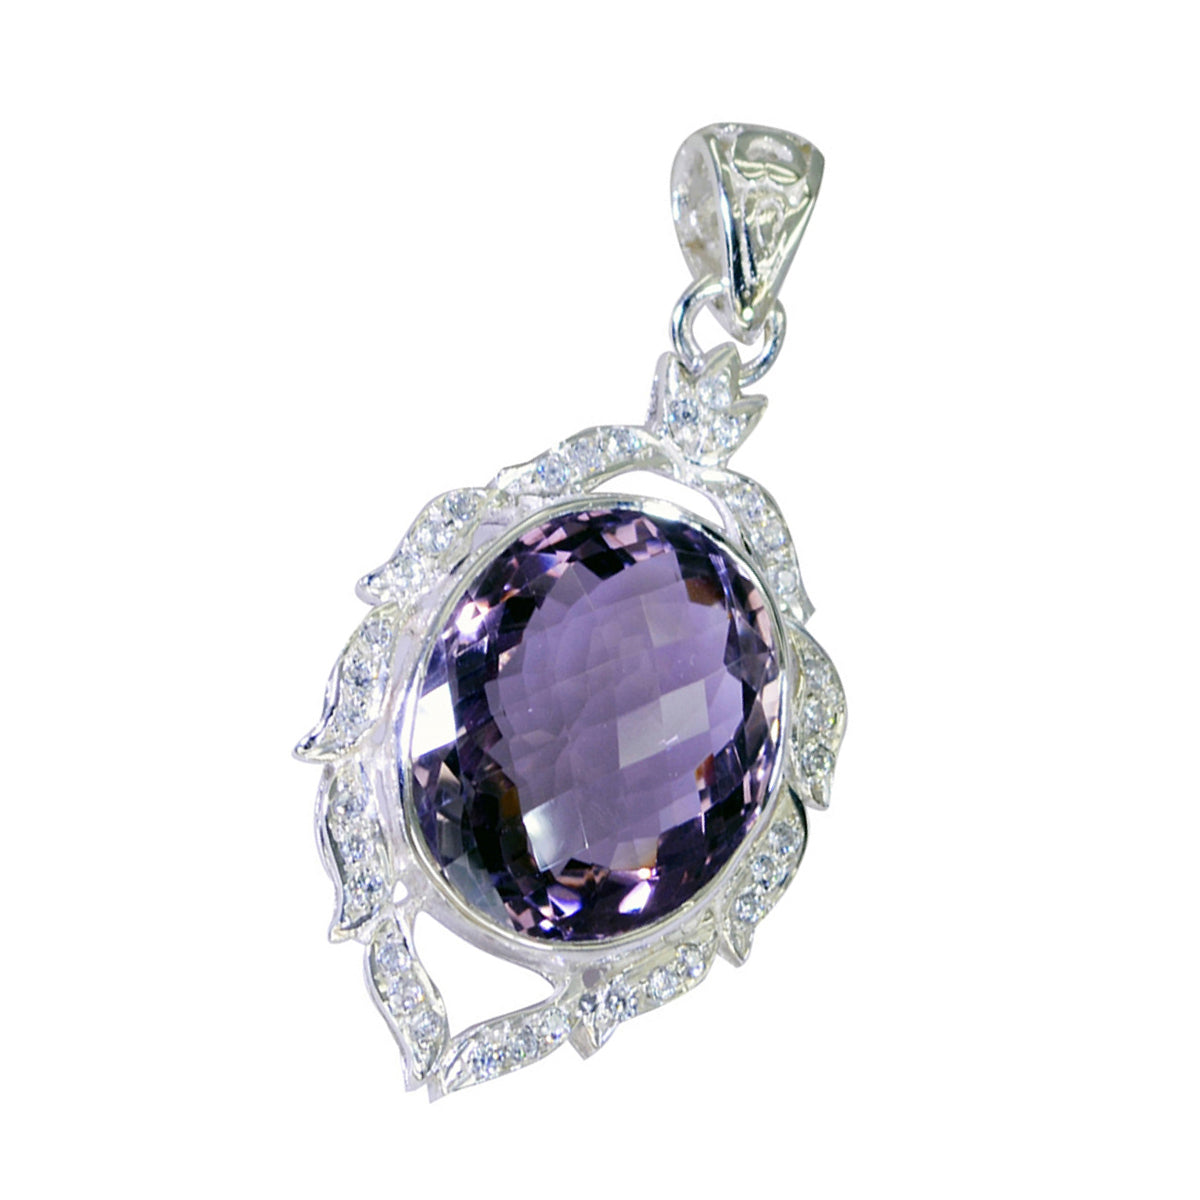 Riyo Cute Gems Anhänger, oval, facettiert, violetter Amethyst, massives Silber, Geschenk für Hochzeit